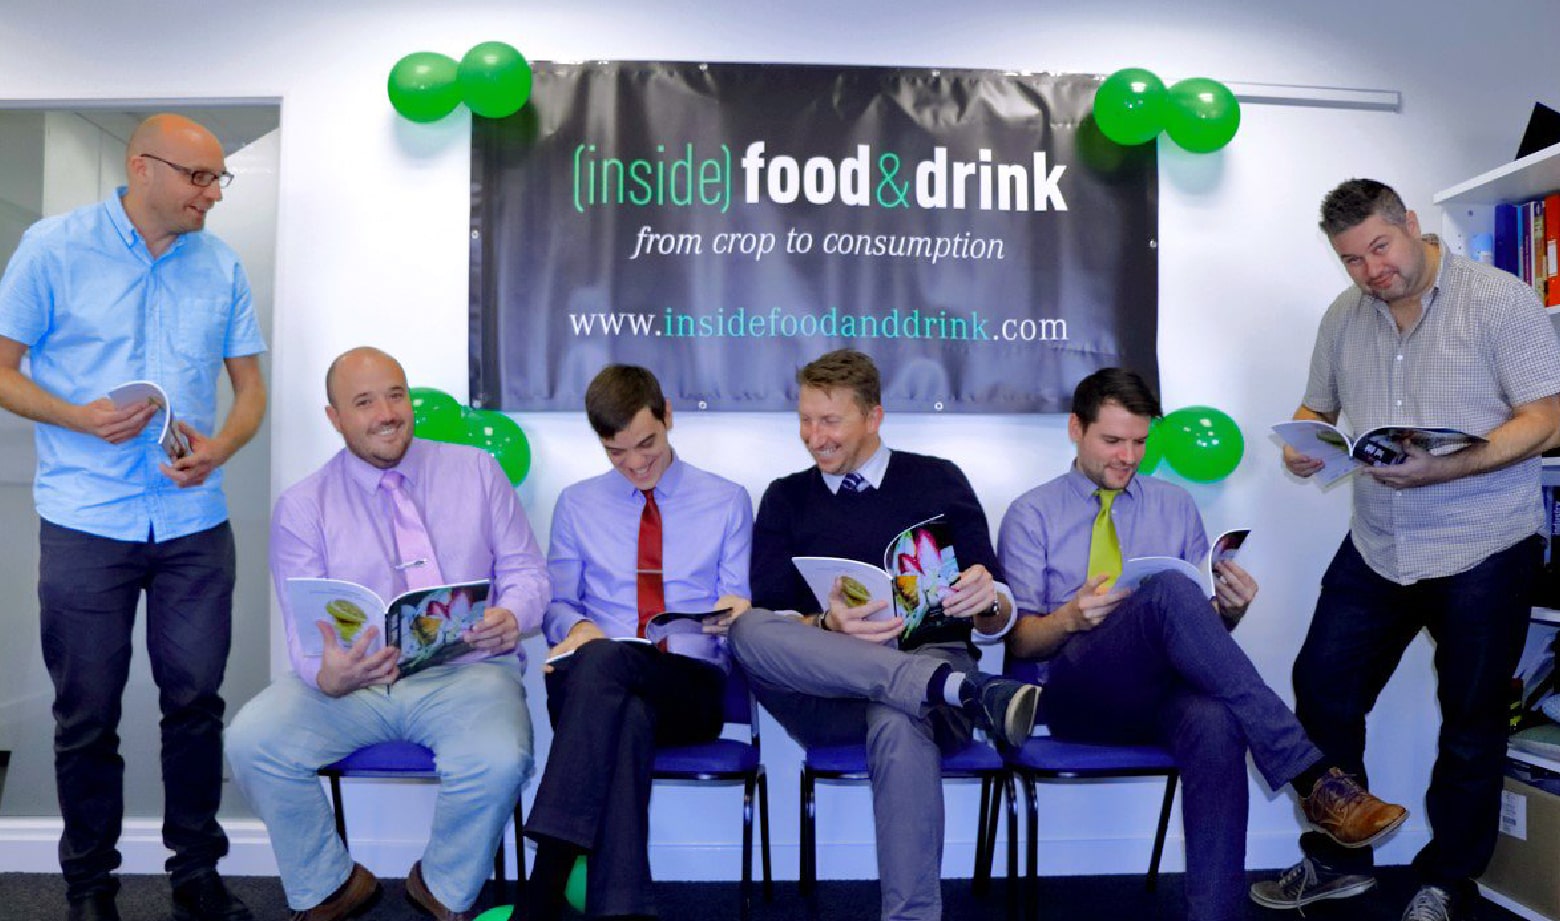 ¡Decimos presente en la nueva edición de la revista Inside Food & Drink!